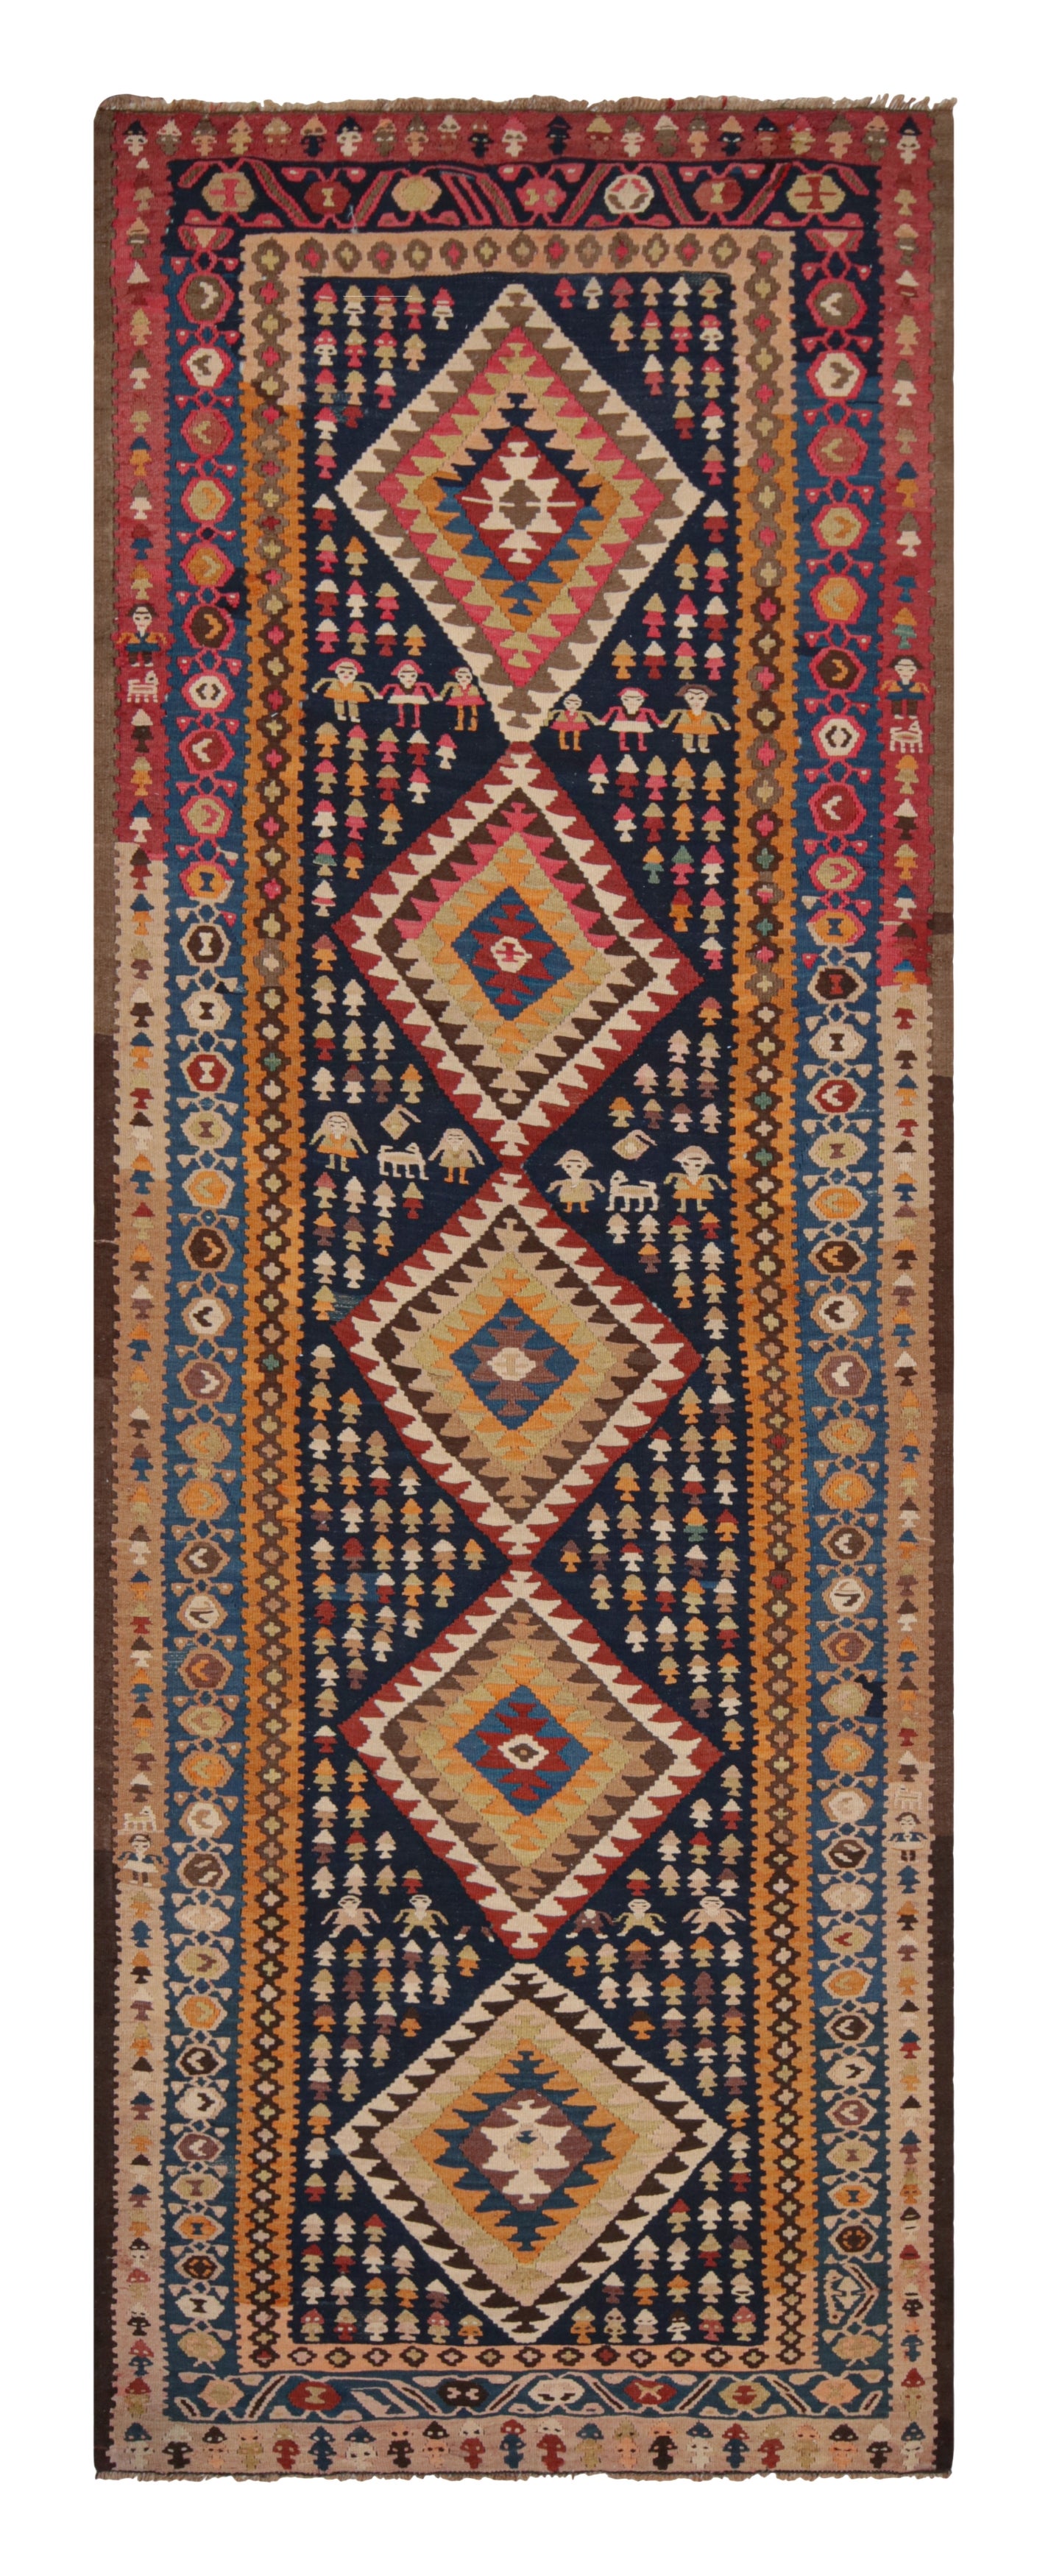 Vintage Bidjar Geometric Brown & Orange Wool Persian Kilim Runner by Rug & Kilim